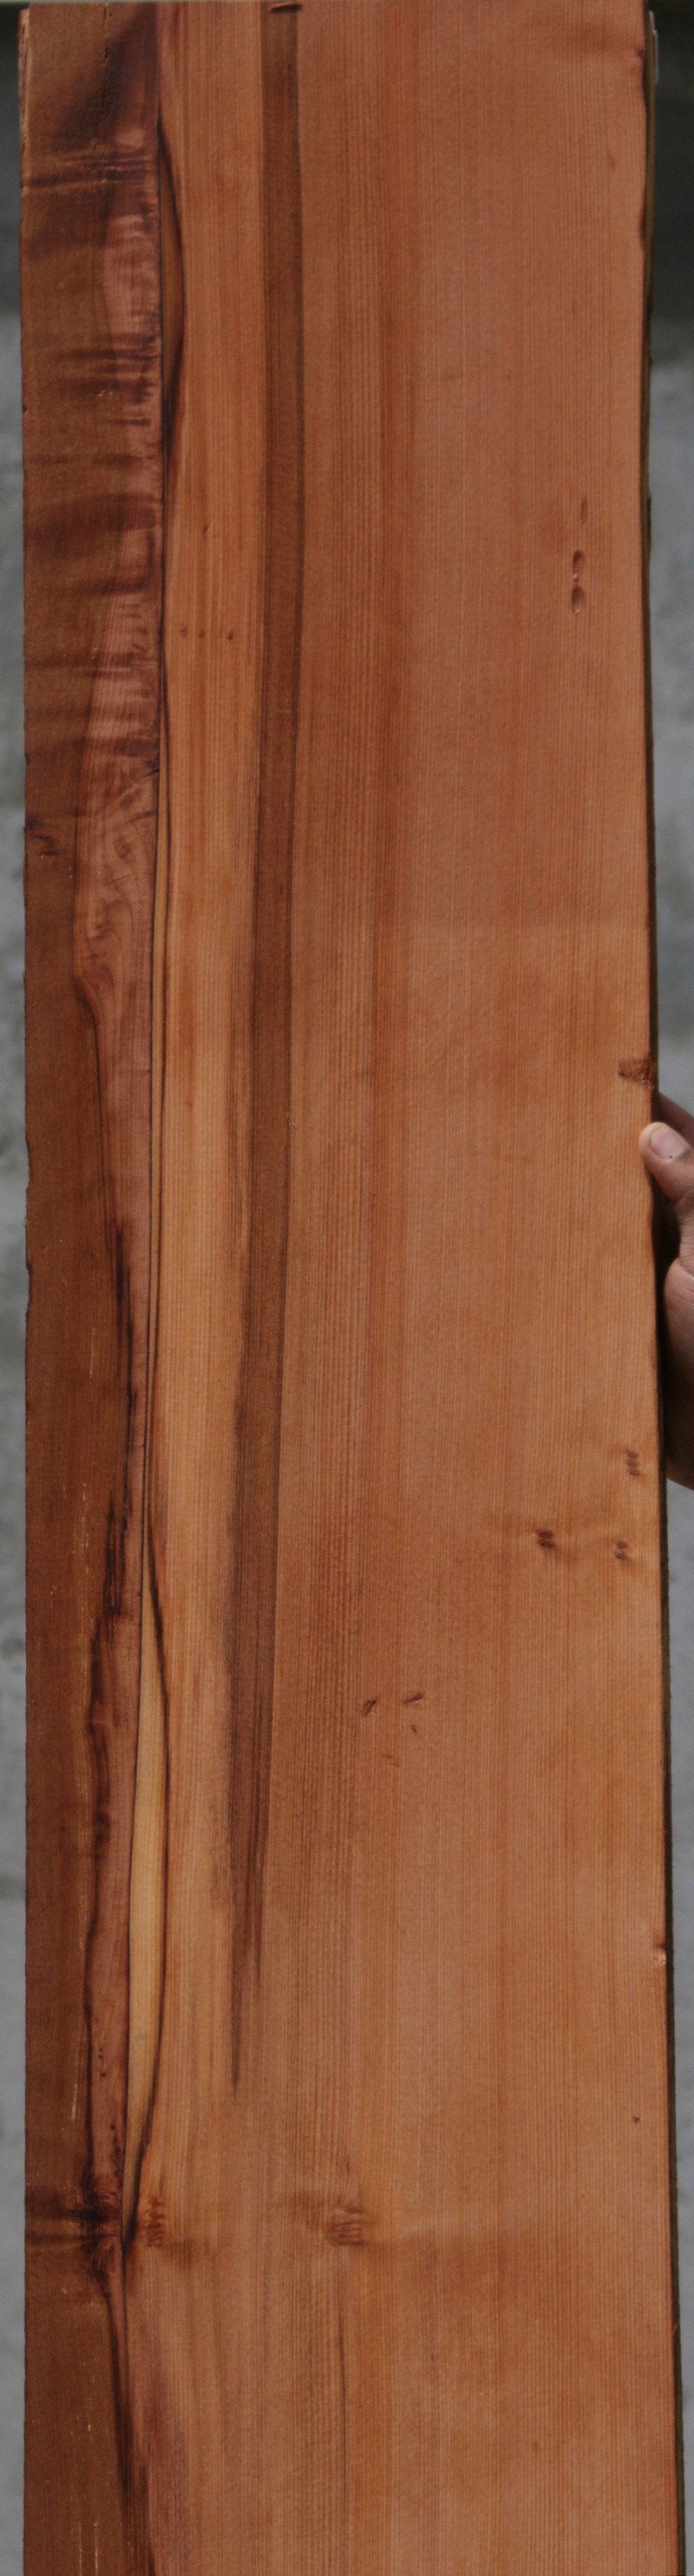 Redwood Lumber